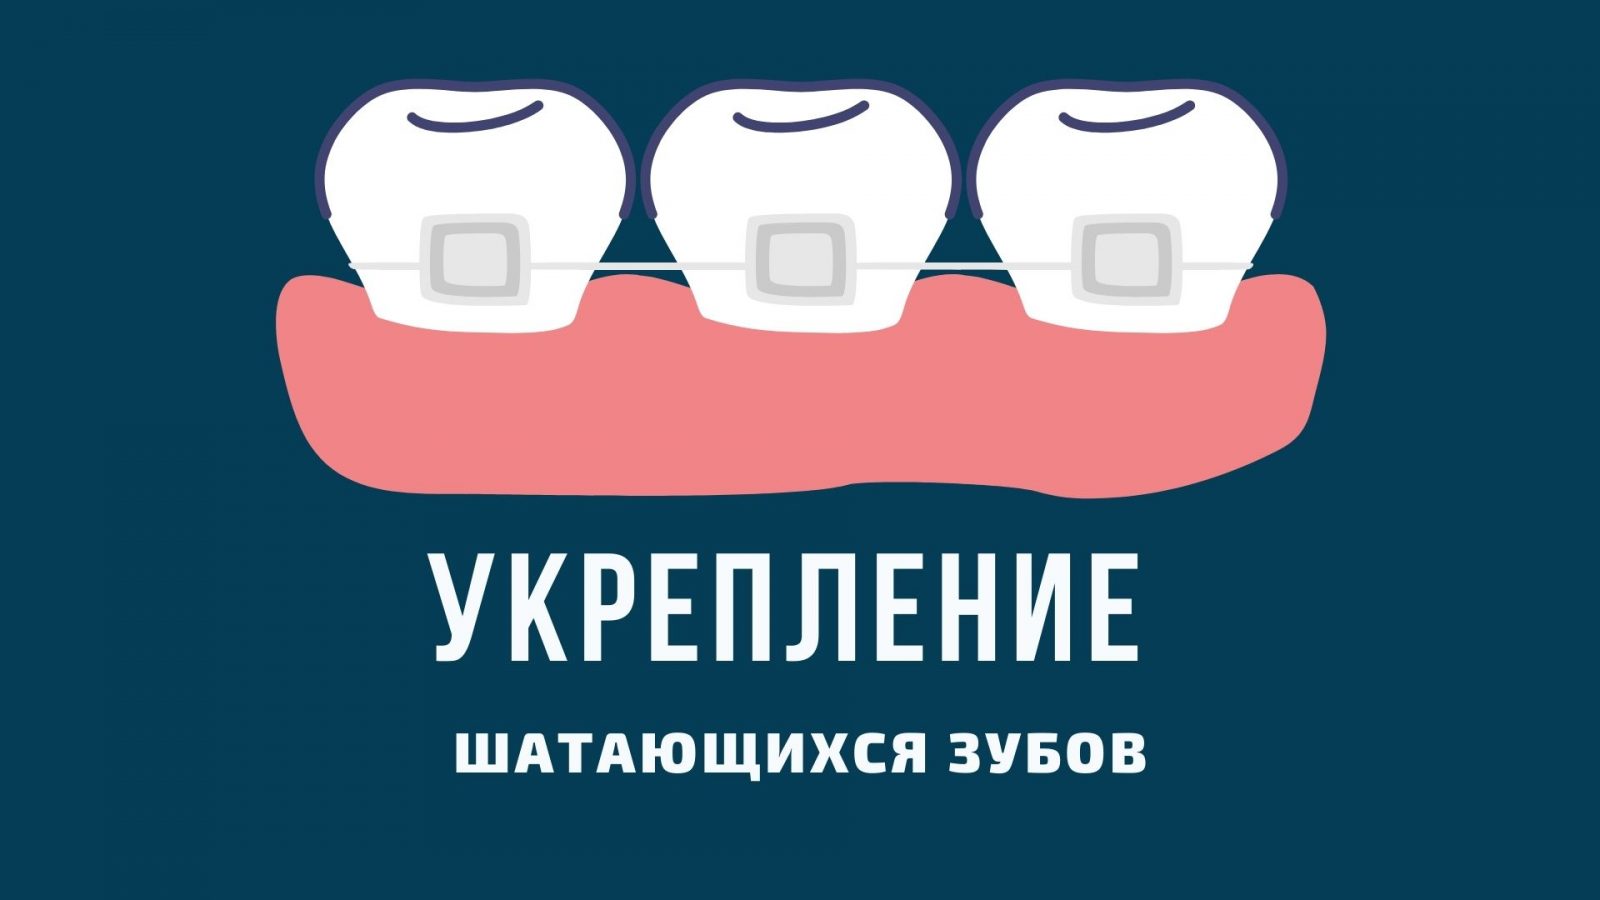 Чи можна самостійно зміцнити зуб, який хитається?